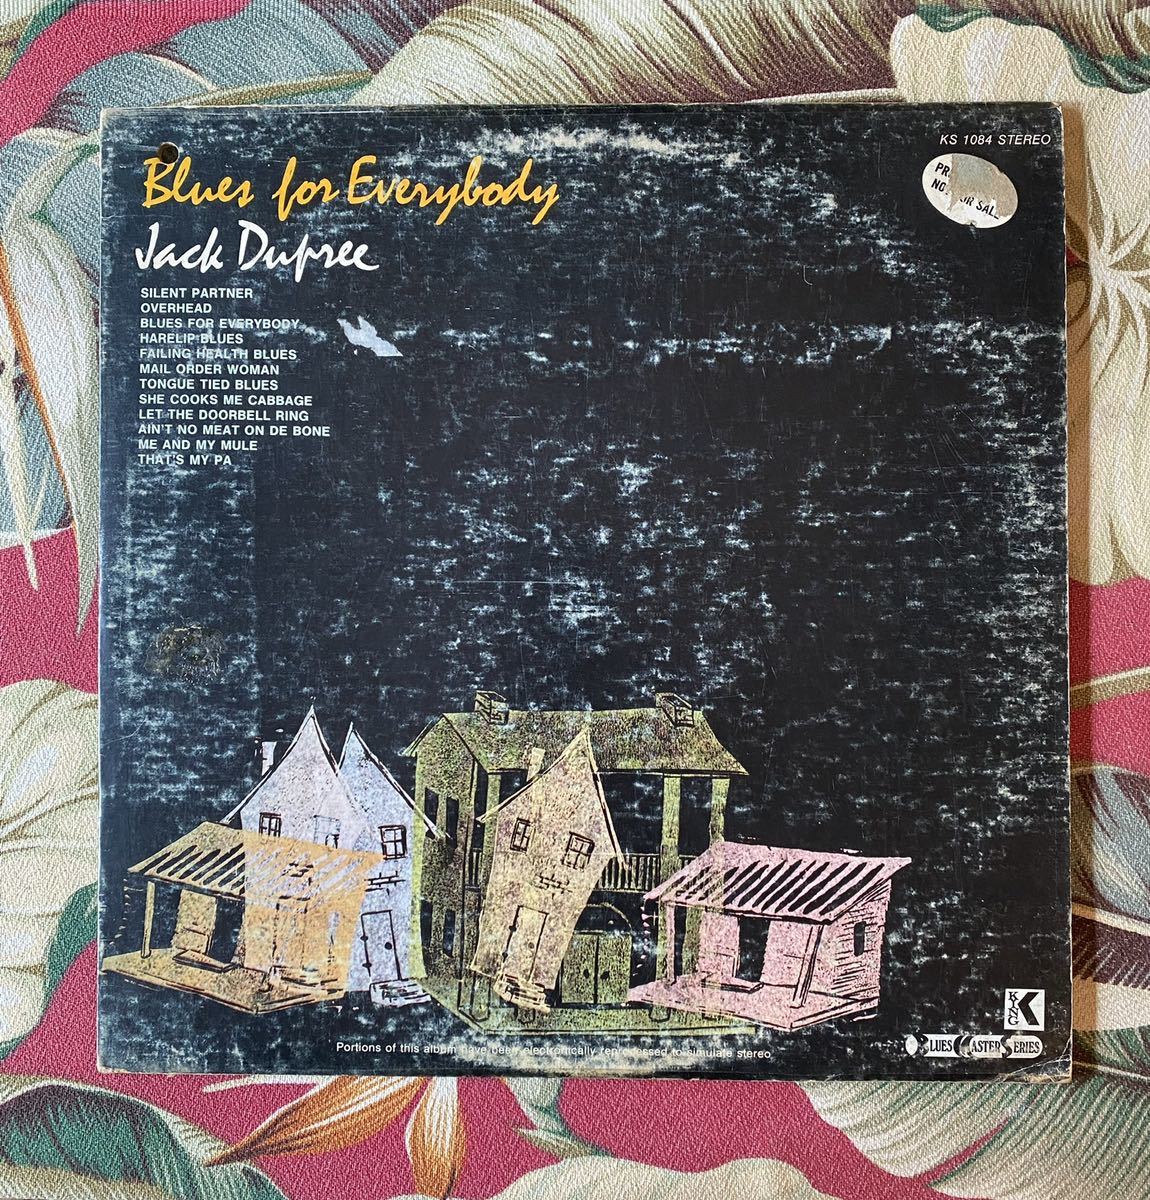 【超歓迎された】 偉大な Jack Dupree 1976 US Press King-1084 LP Blues For Everybody experienciasalud.com experienciasalud.com